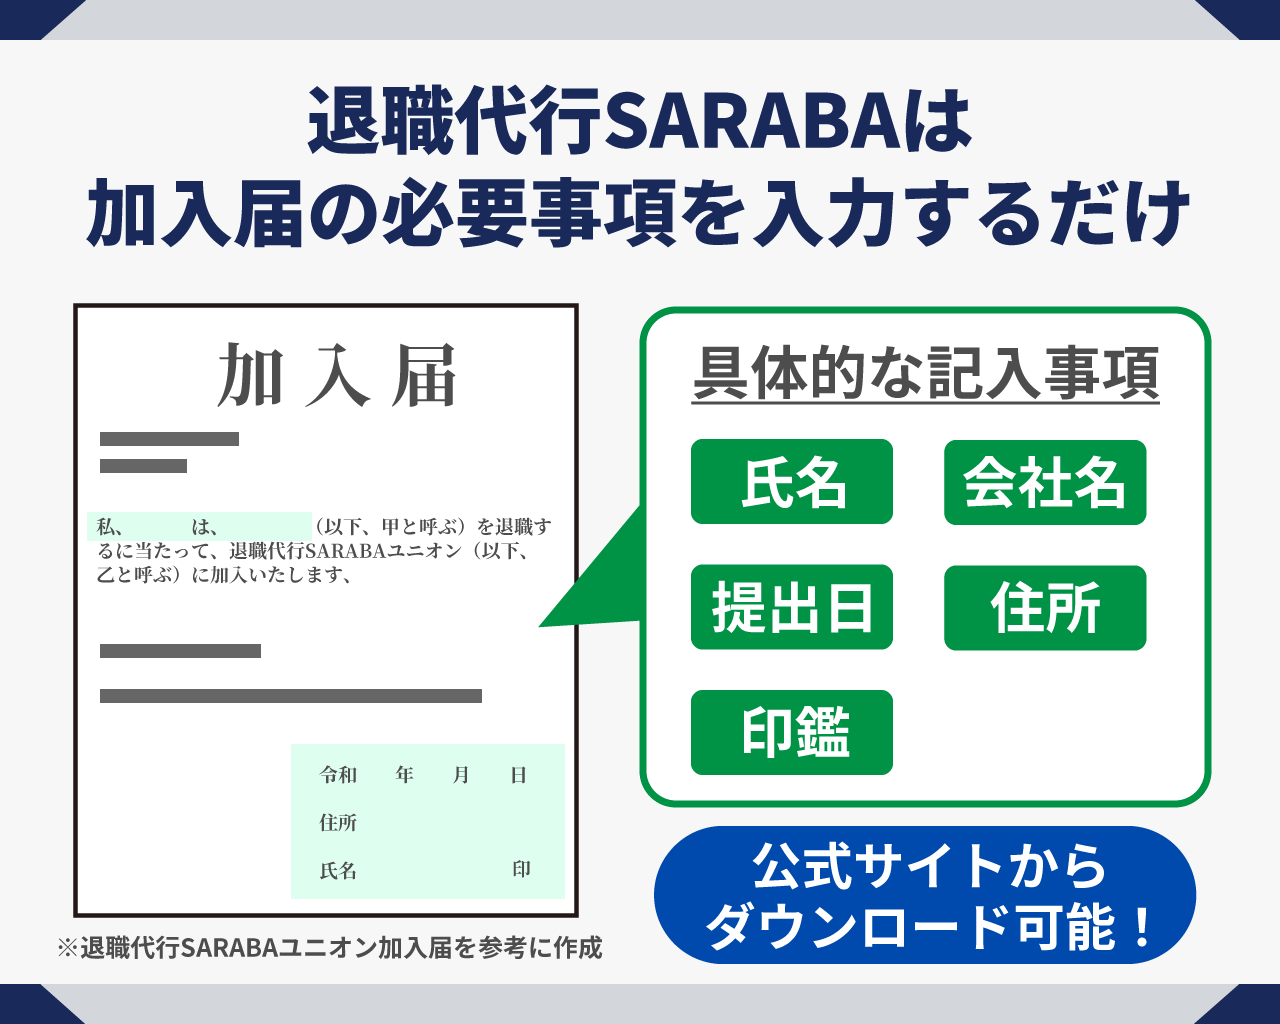 07_退職代行SARABAは加入届の必要事項を入力するだけ.png